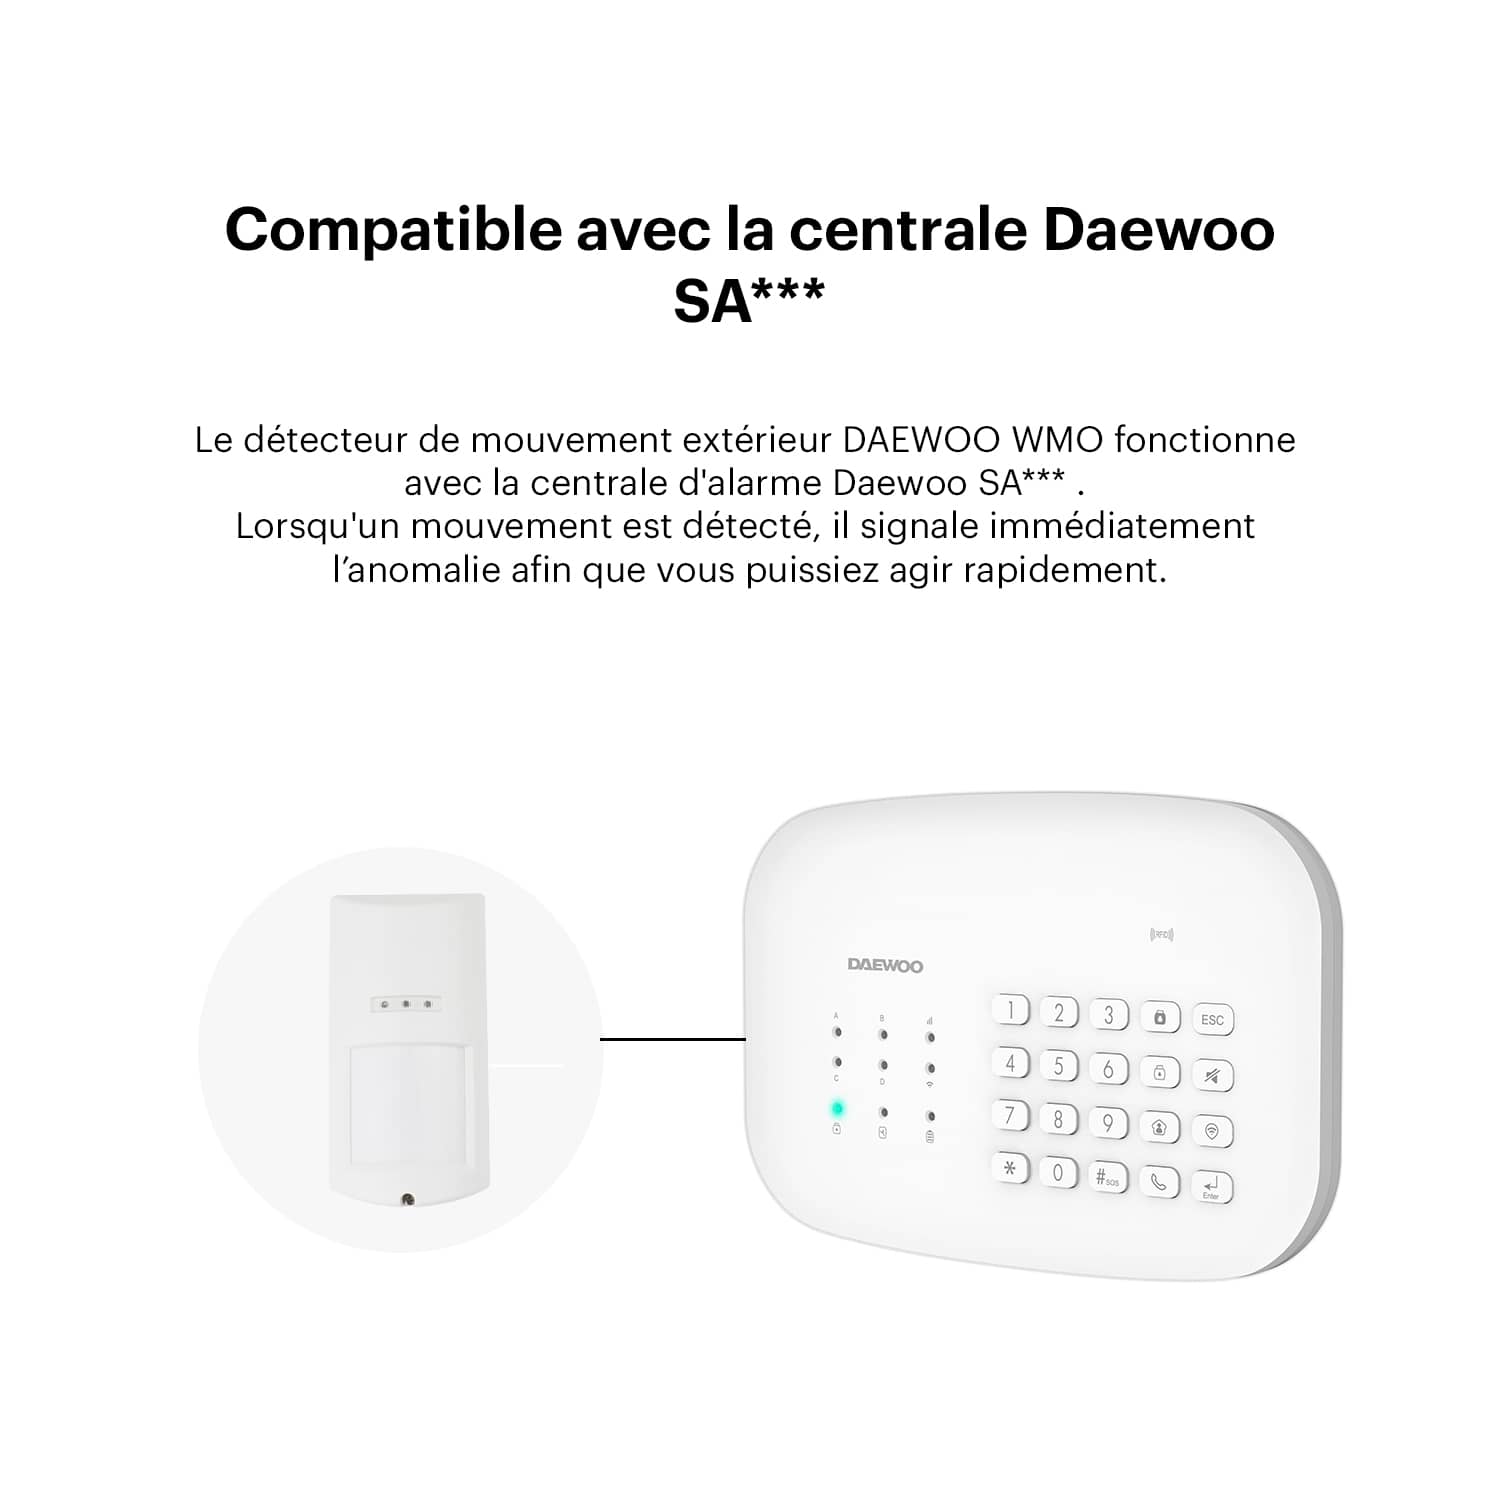 https://daewoo-security.fr/cdn/shop/products/detecteur-de-mouvement-exterieur-wmo501-pour-alarme-daewoo-352307.jpg?v=1651850585&width=1500